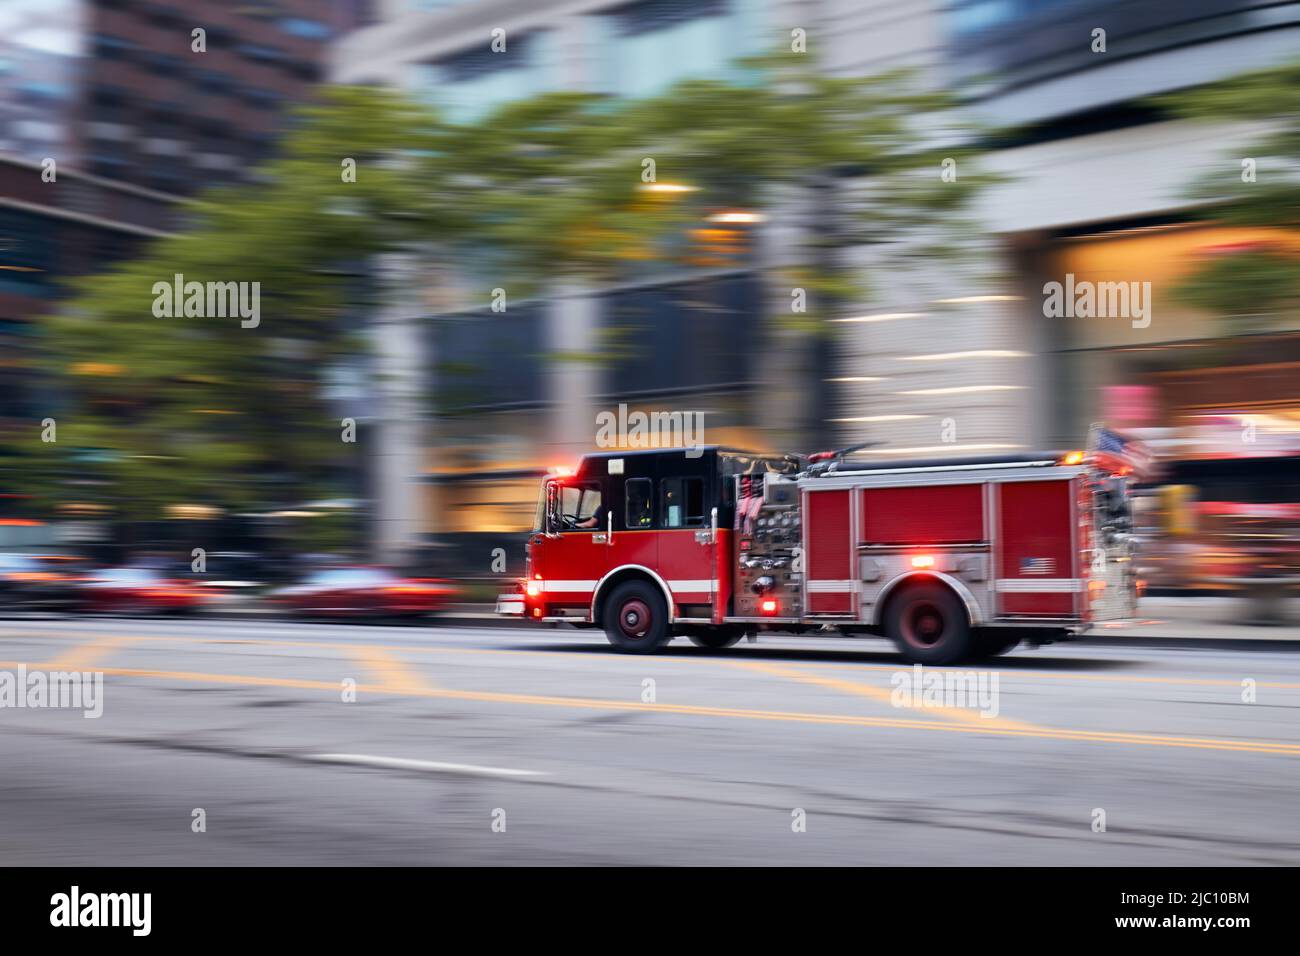 Schnell fahrender Feuerwehrmotor auf der Stadtstraße. Feuerwehrleute in unscharfer Bewegung. Themen Rettung, Dringlichkeit und Hilfe. Stockfoto